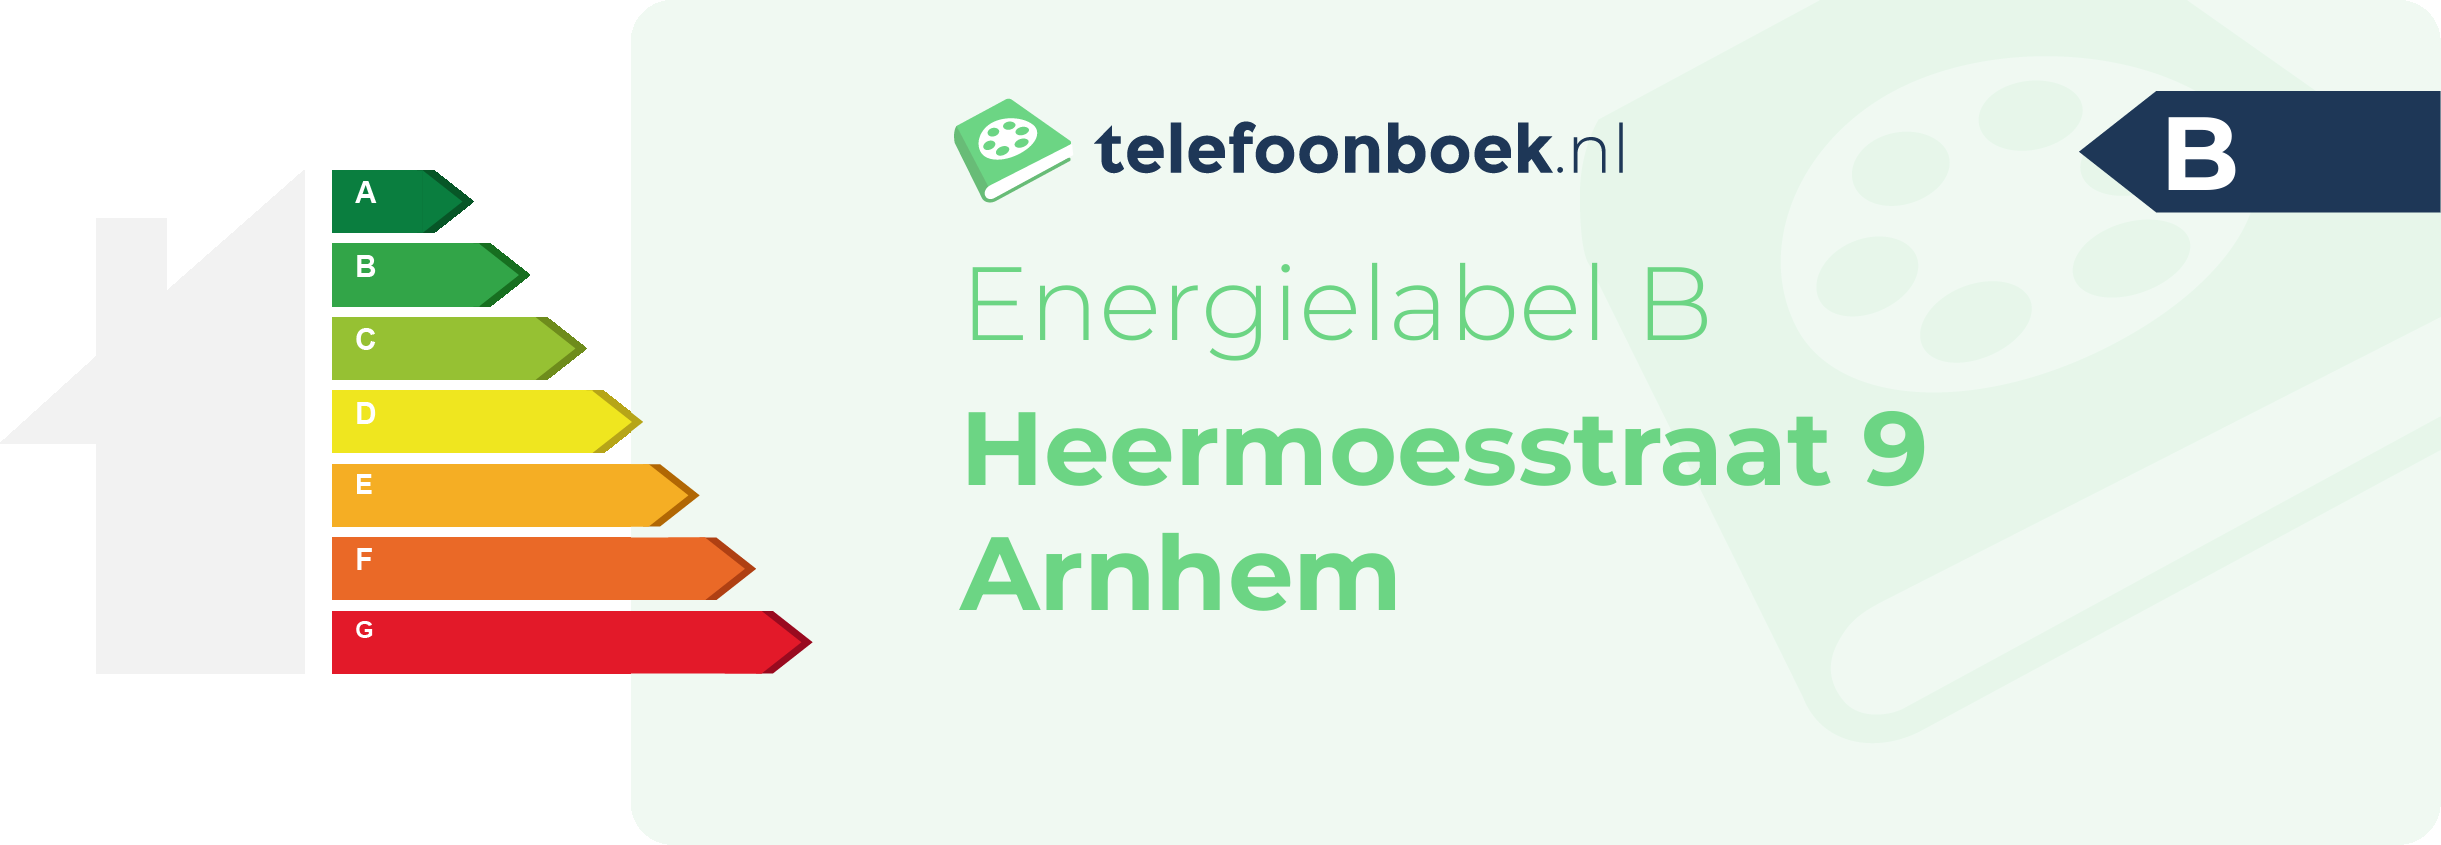 Energielabel Heermoesstraat 9 Arnhem